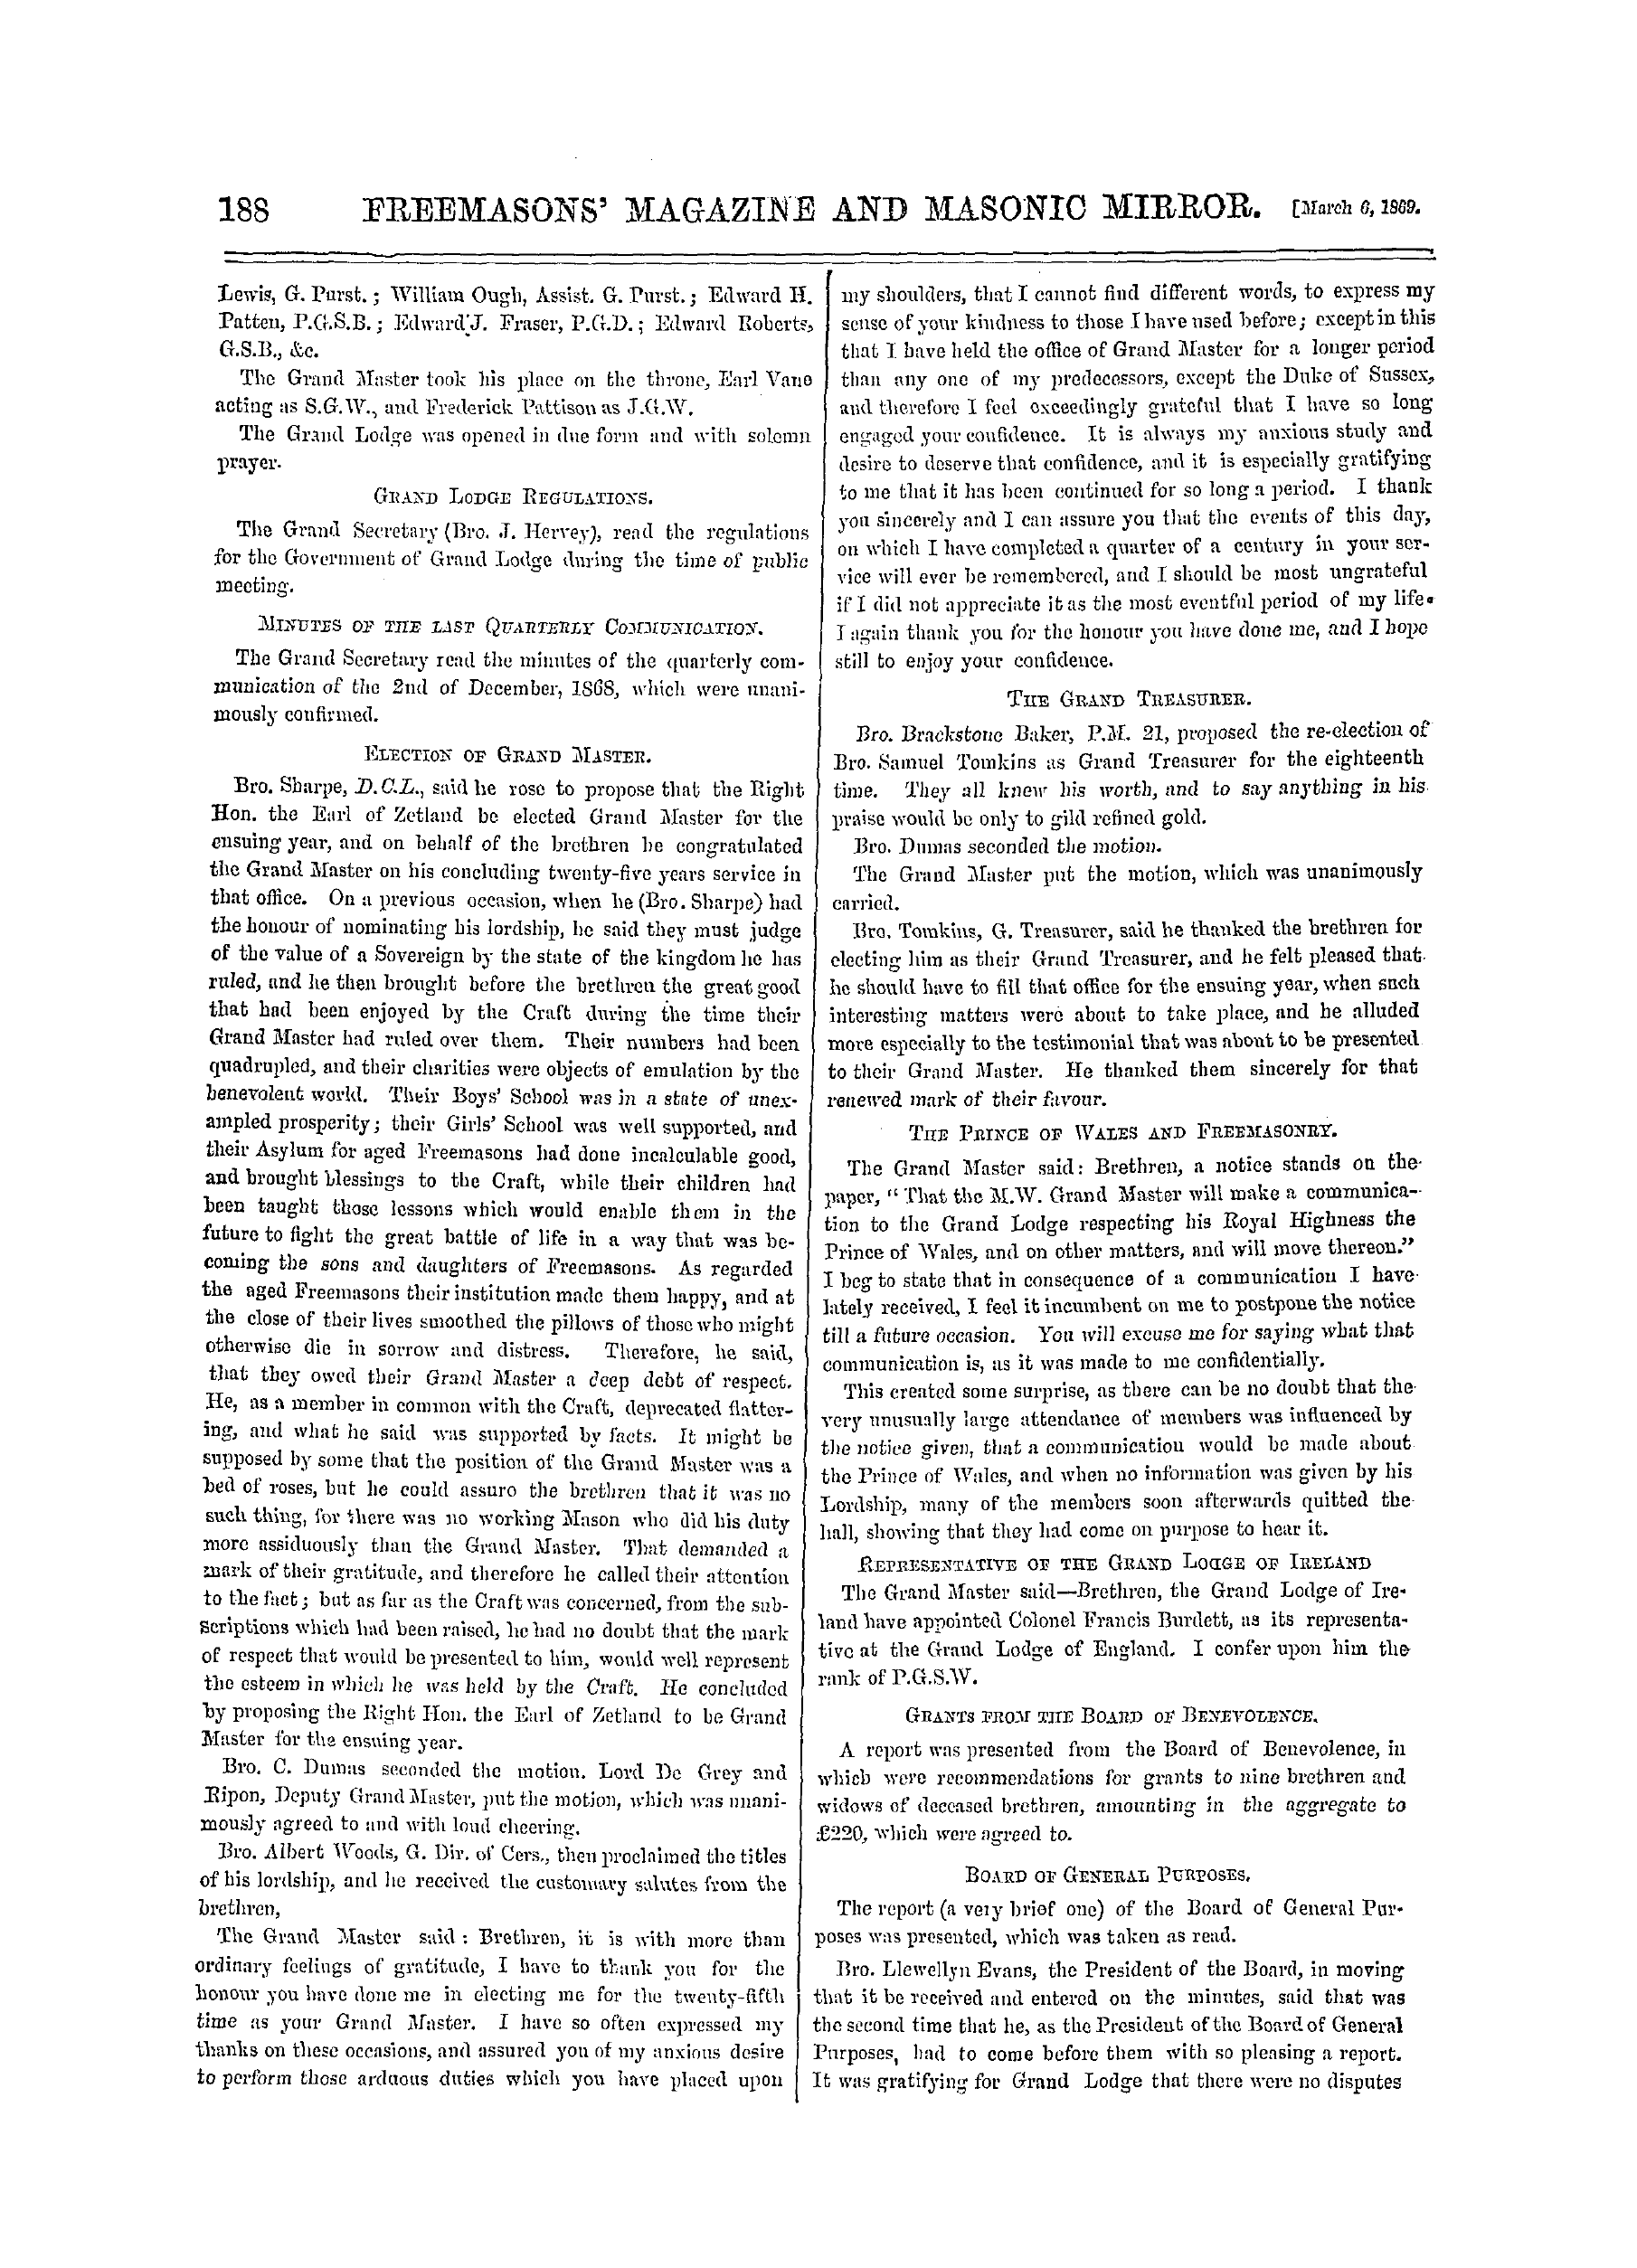 The Freemasons' Monthly Magazine: 1869-03-06: 8